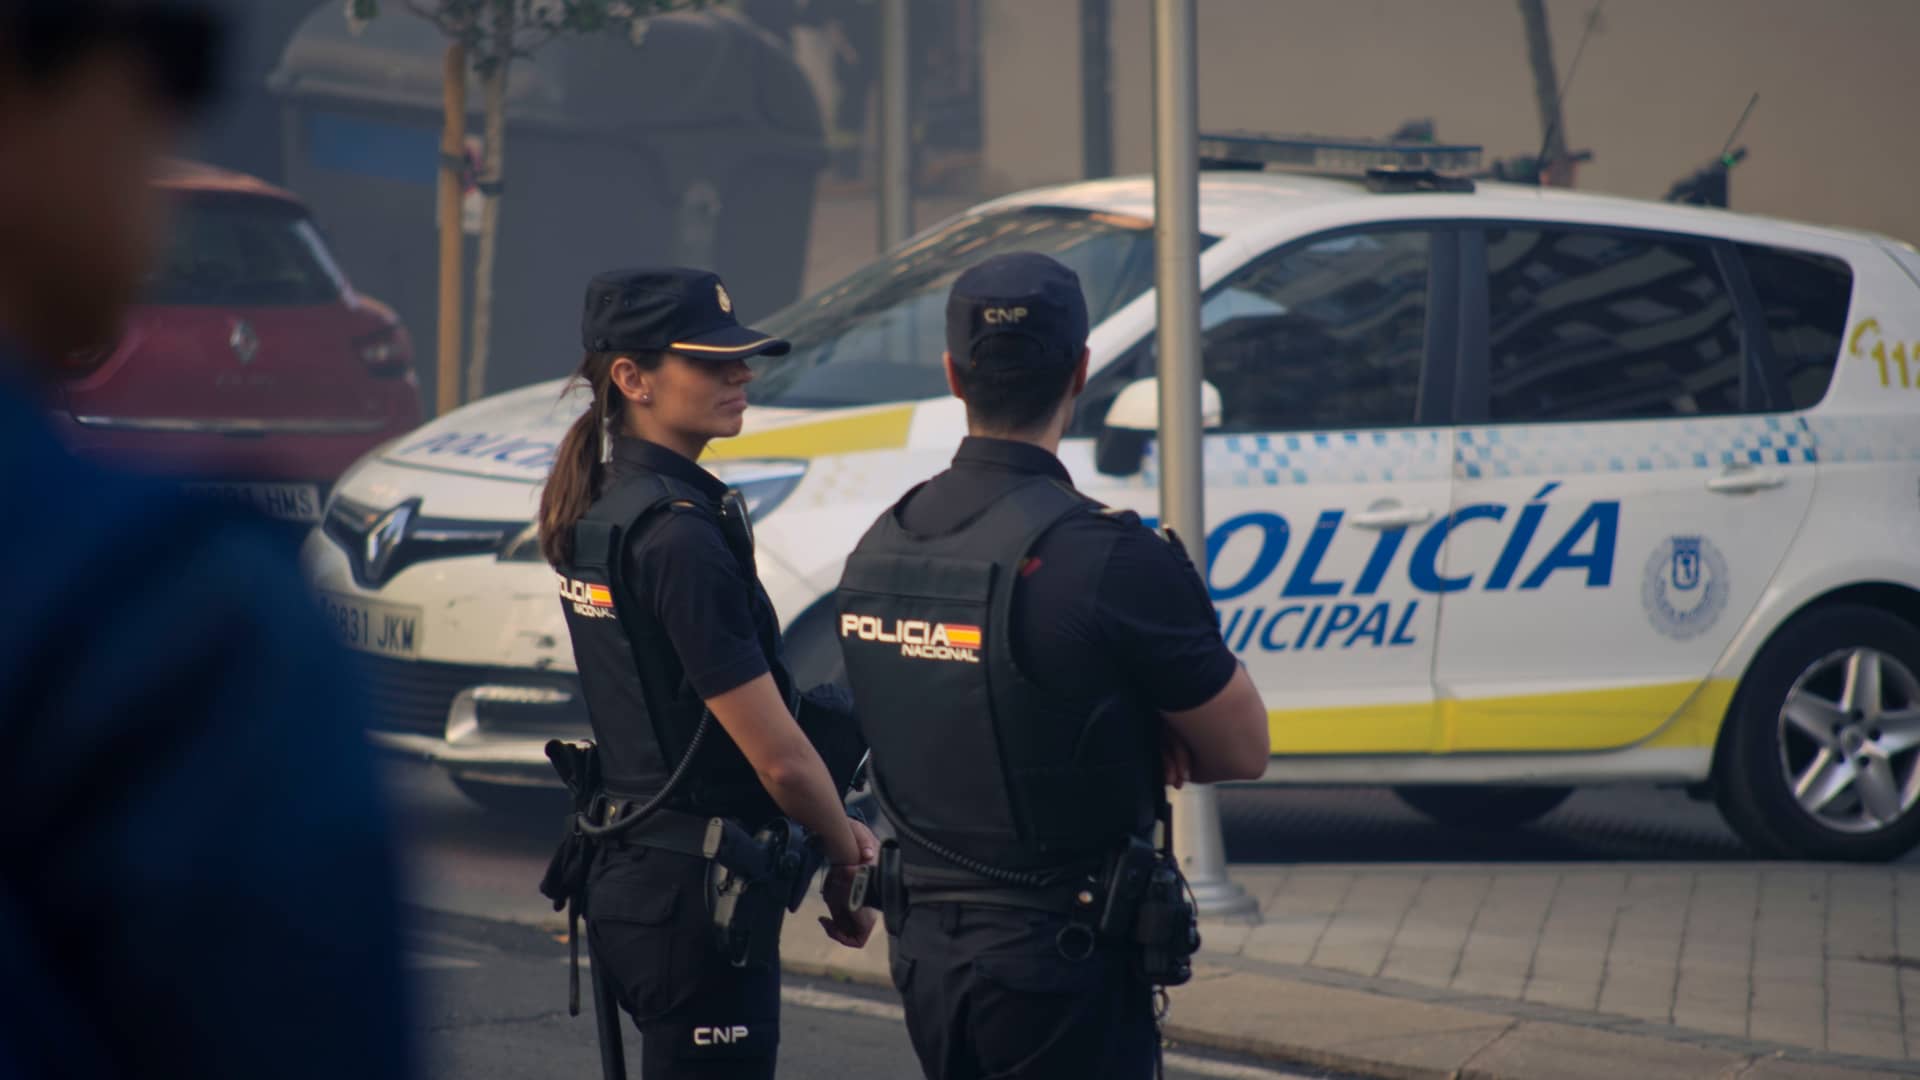 Dos operarios de la policia Nacional delante de un coche que estan tranquilos porque tienen un seguro especial para policias